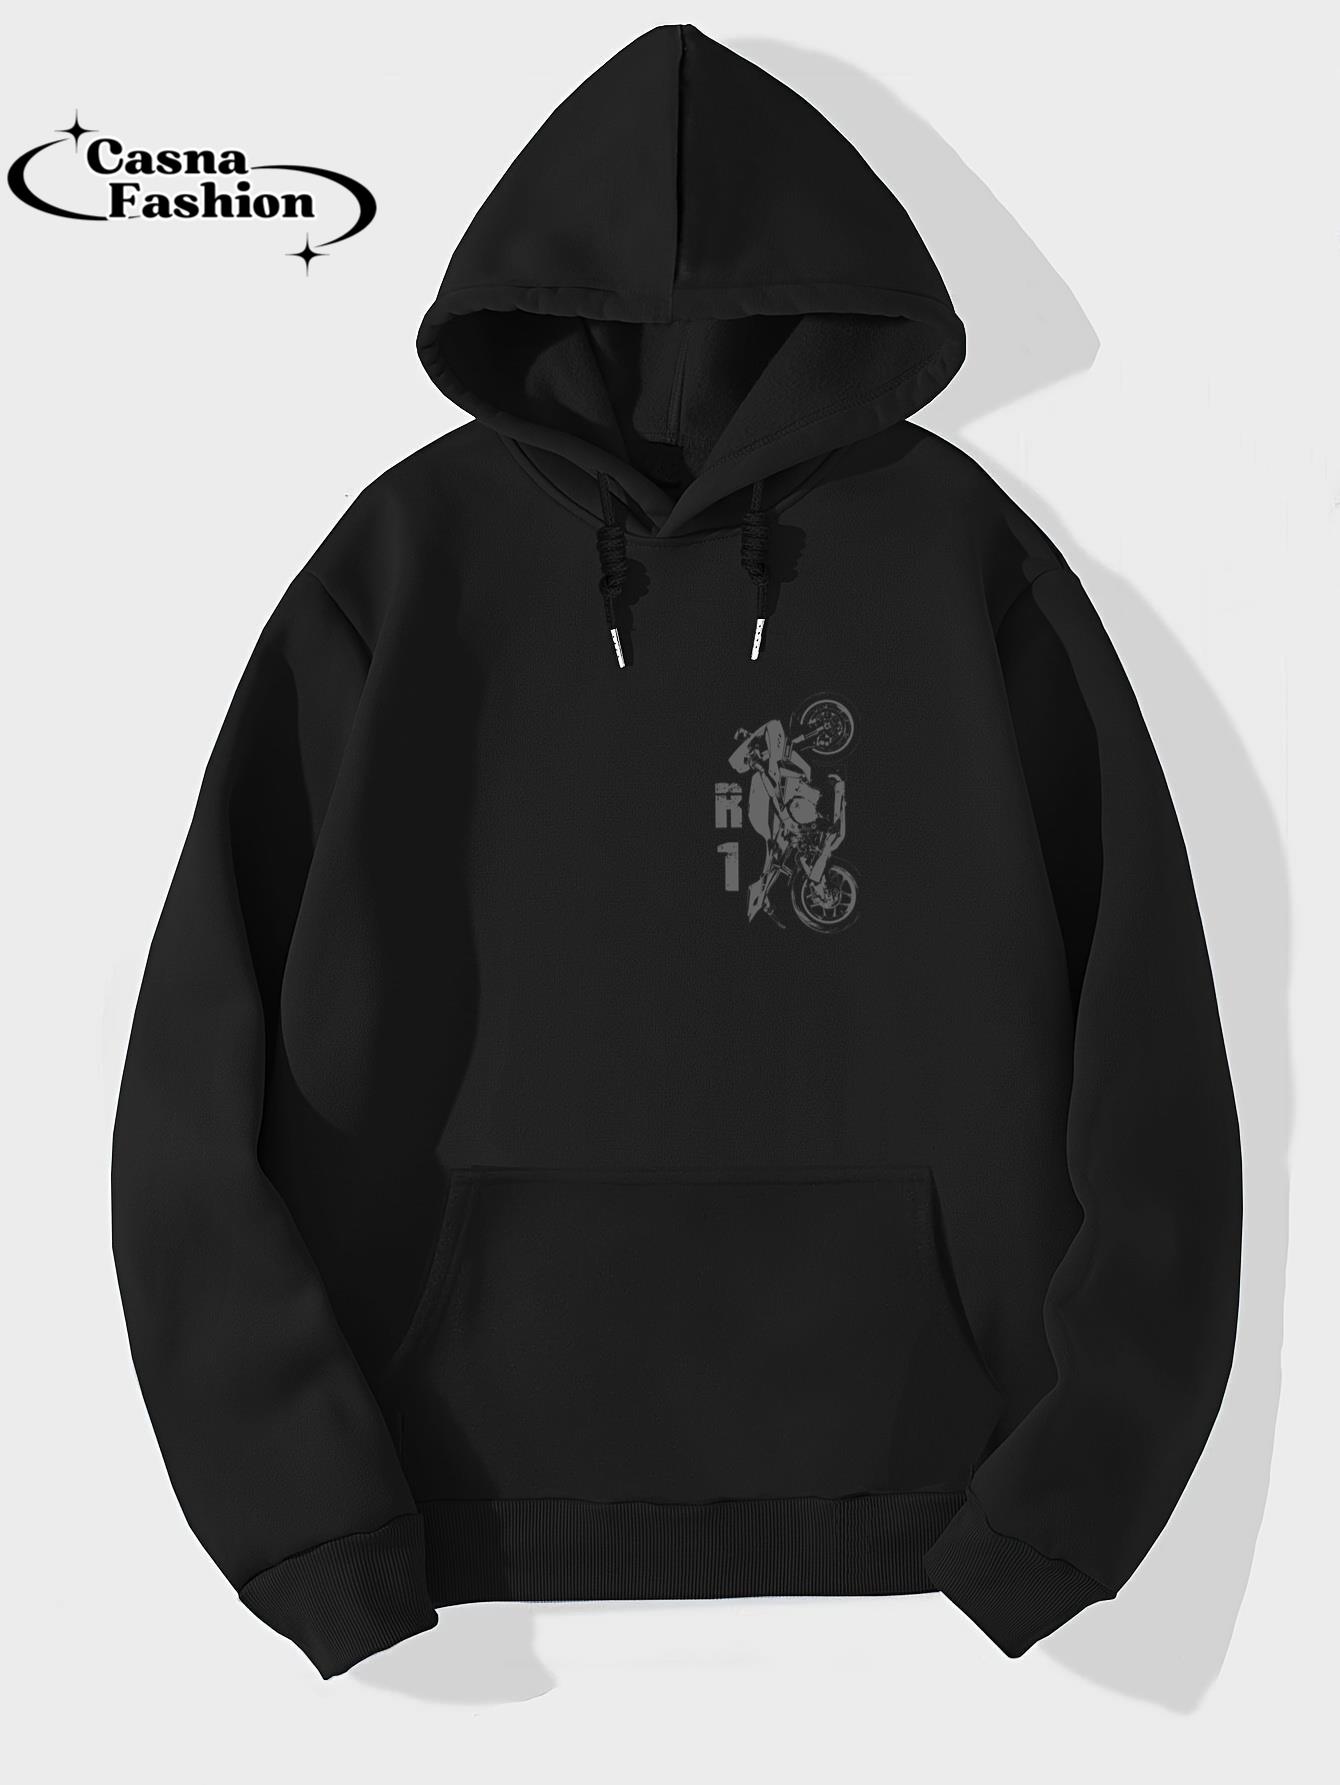 casnafashion_Hoodie_R1 Motorcycle Side Design Pullover Hoodie_hoodie_black hoodie